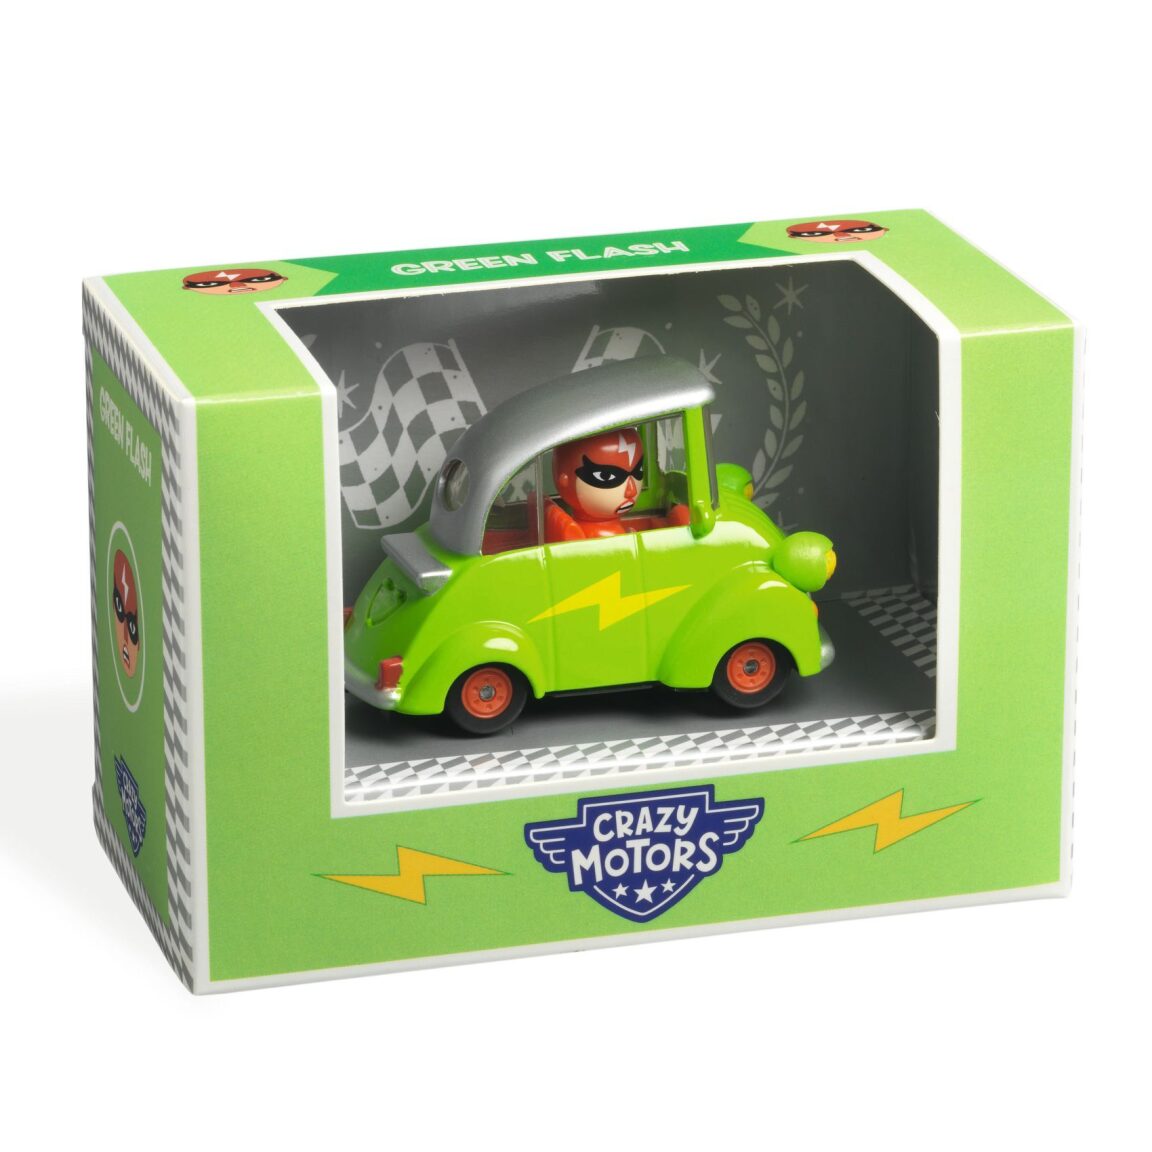 Crazy Motors Green Flash Car